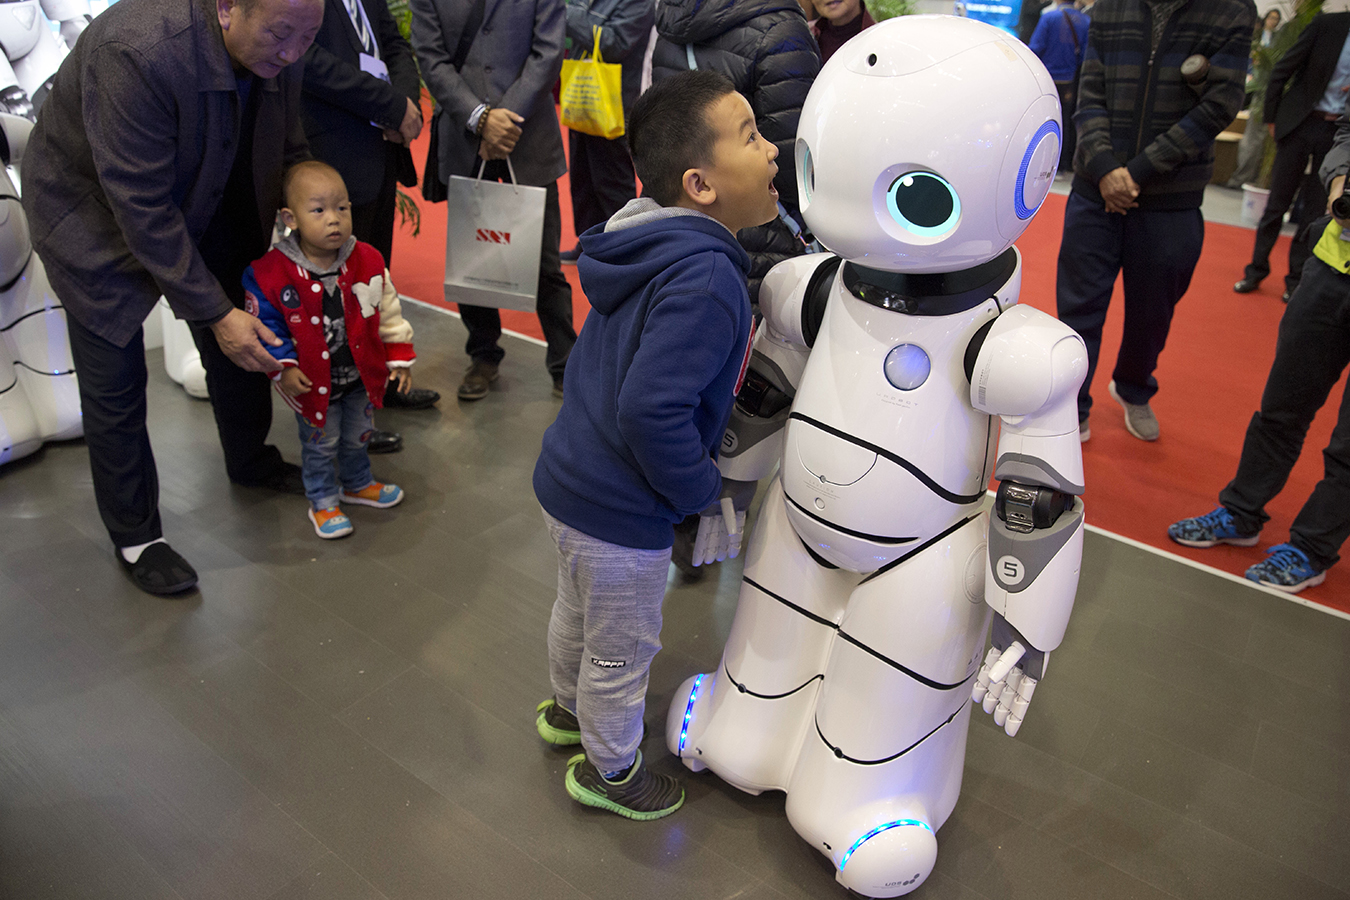 La industria robótica experimenta fascinante apogeo en China